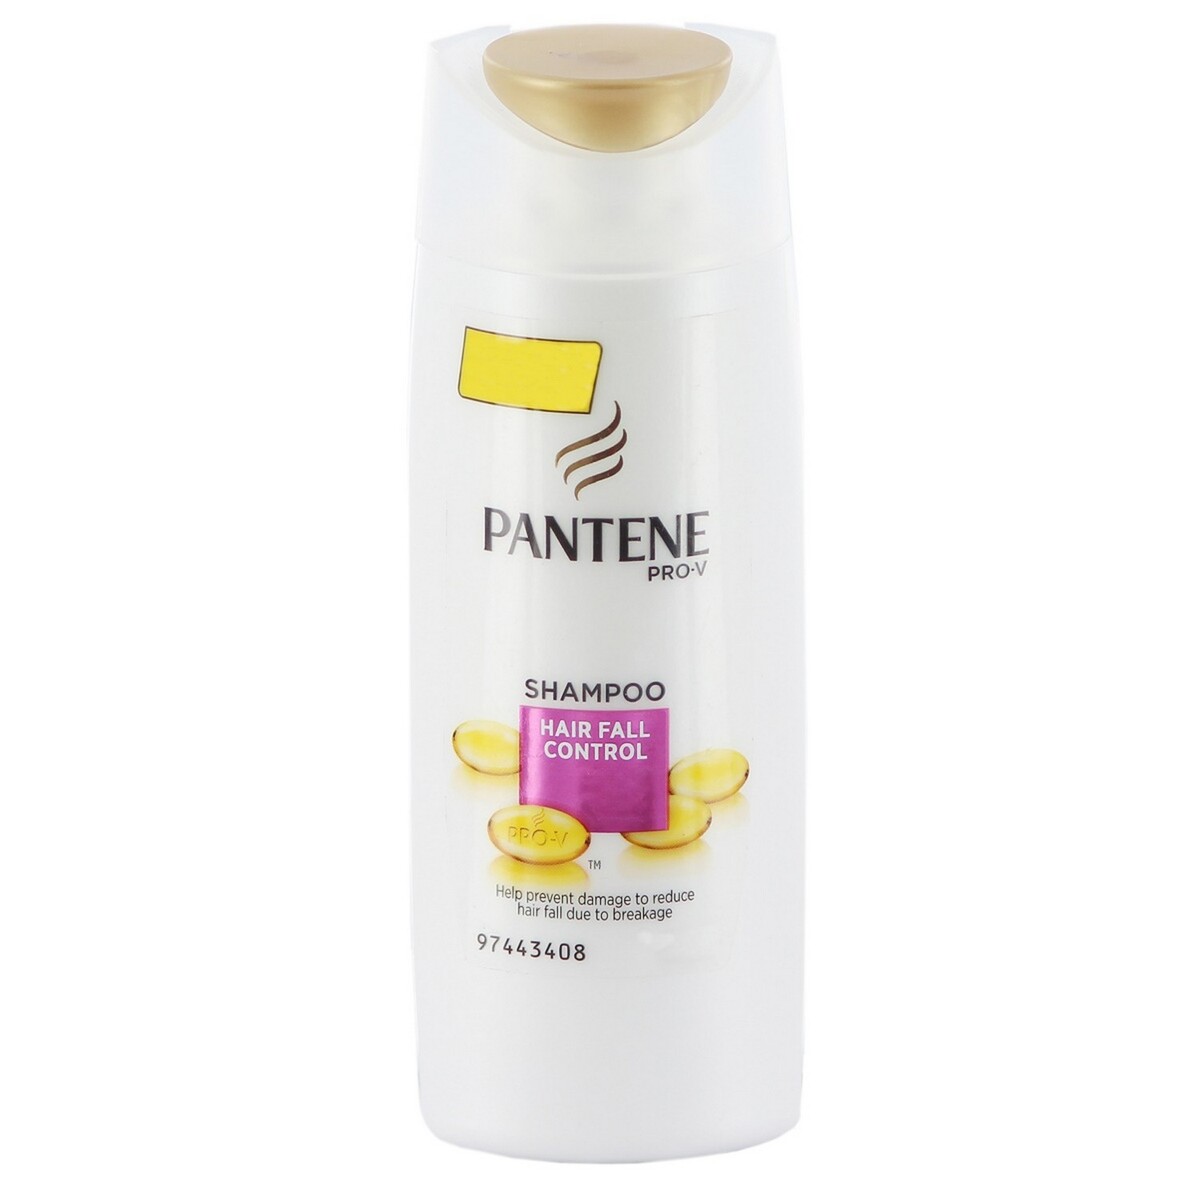 Pantene Shampoo Hair Fall Control 72ml